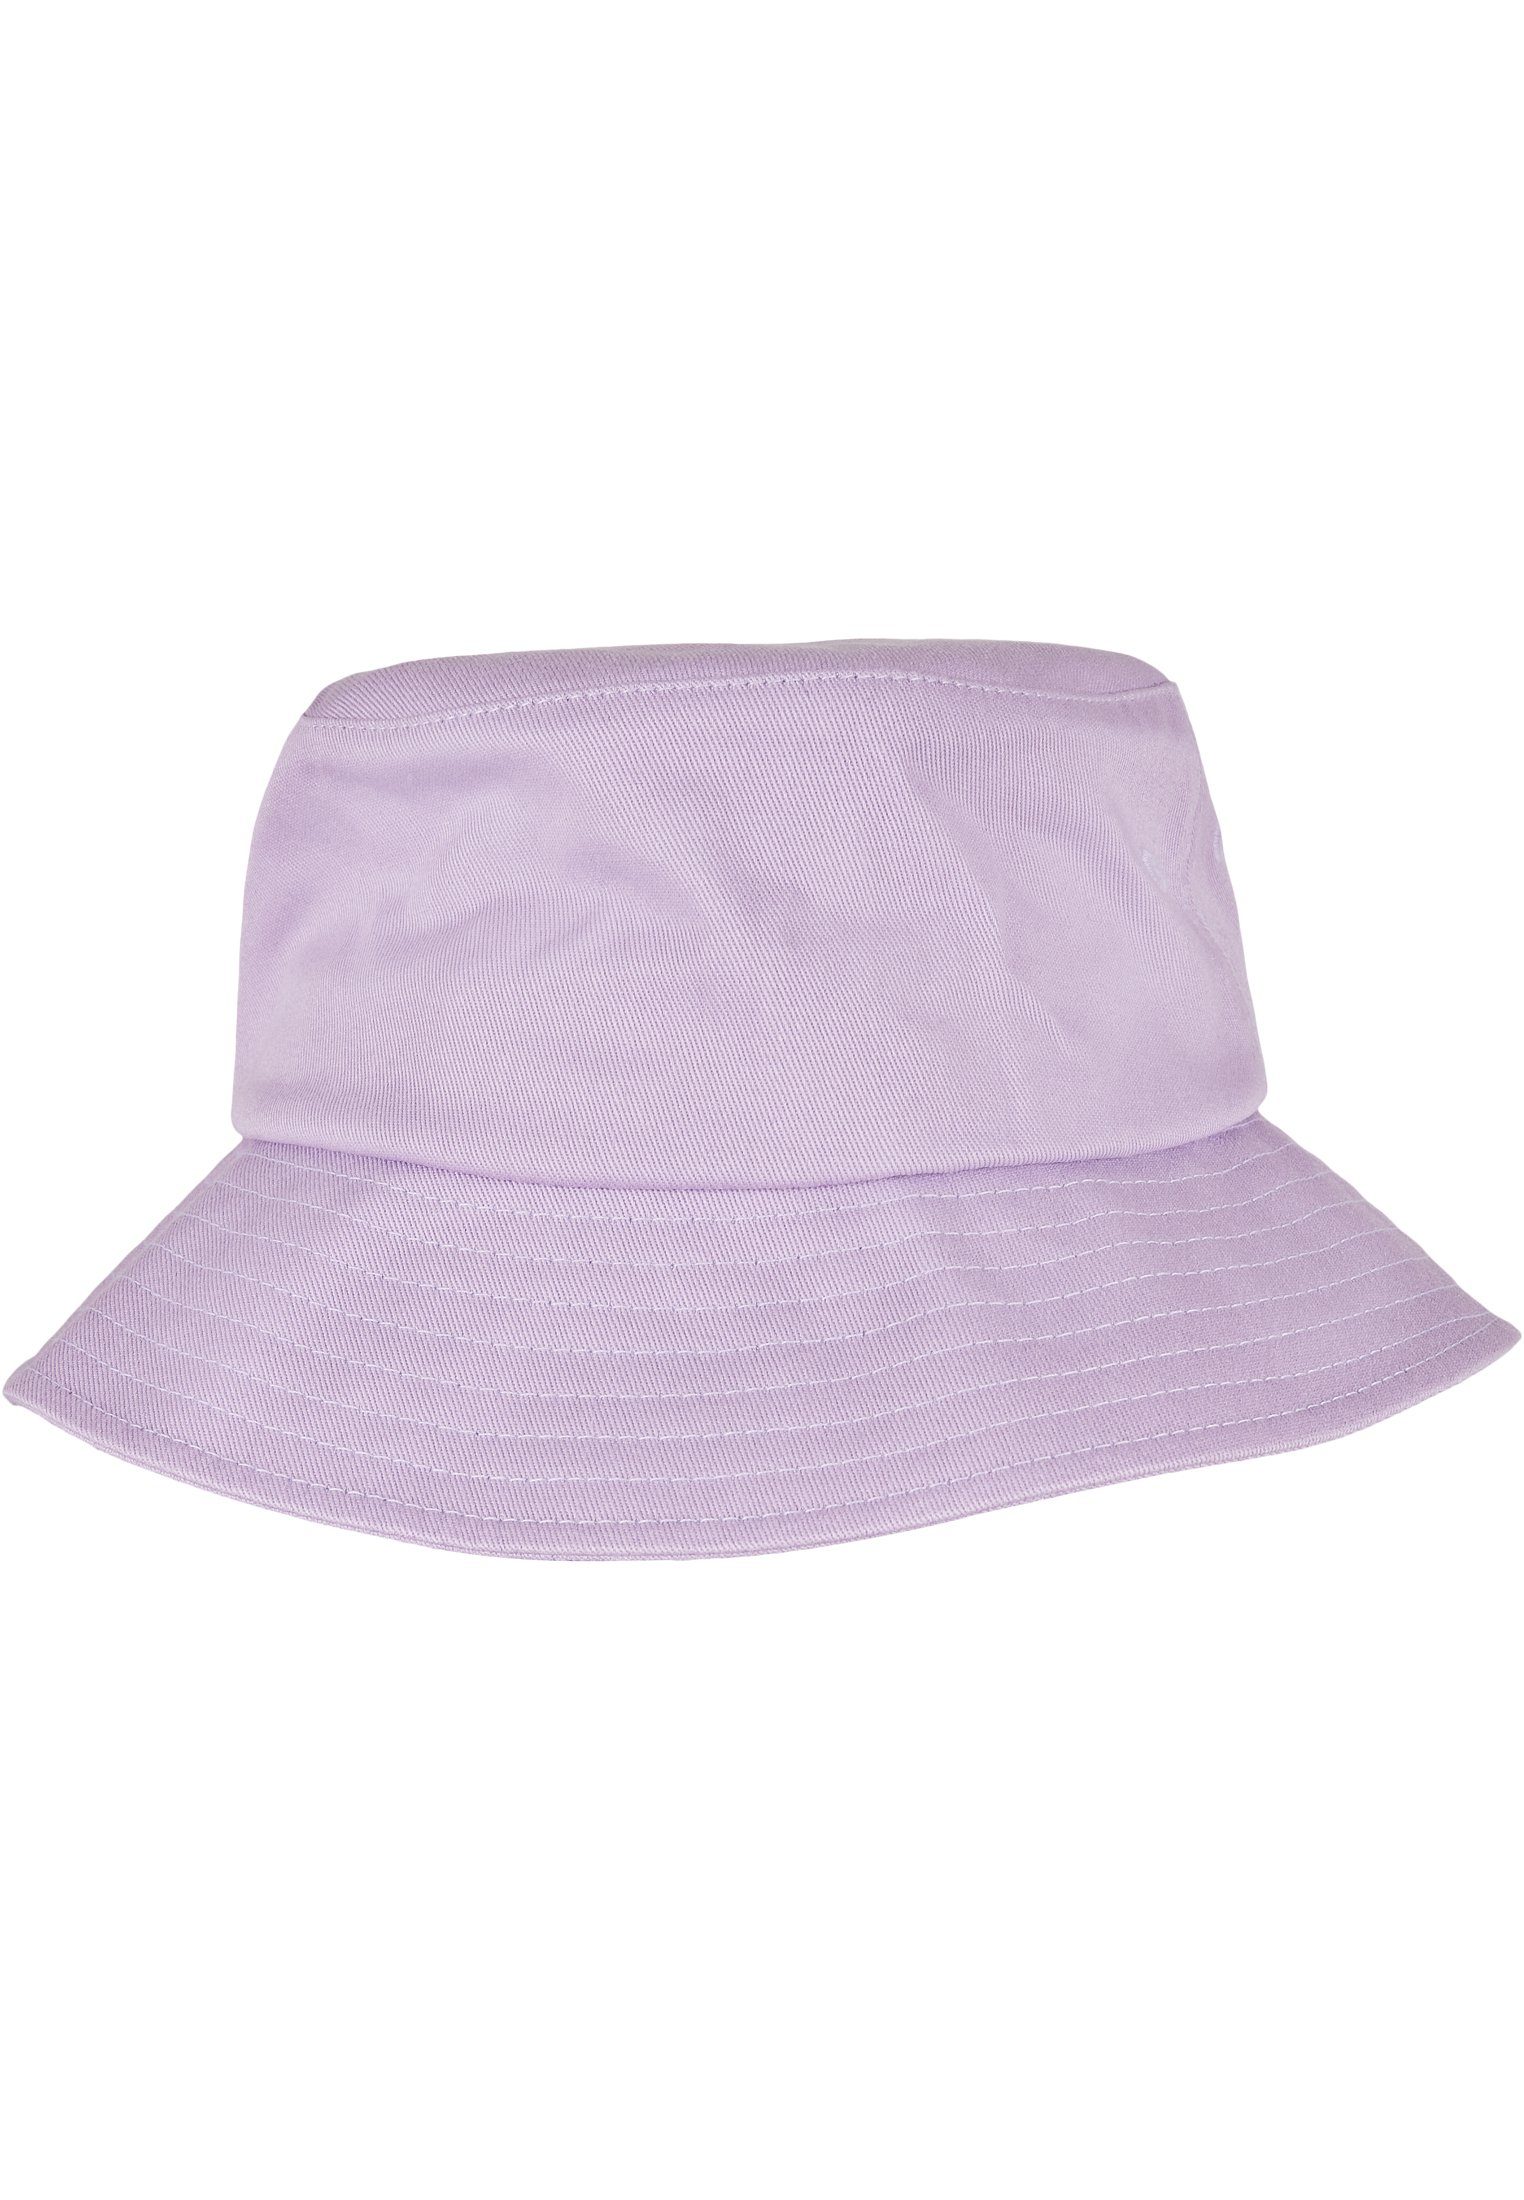 Bucket Flex Cotton Accessoires lilac Flexfit Hat Twill Cap Flexfit